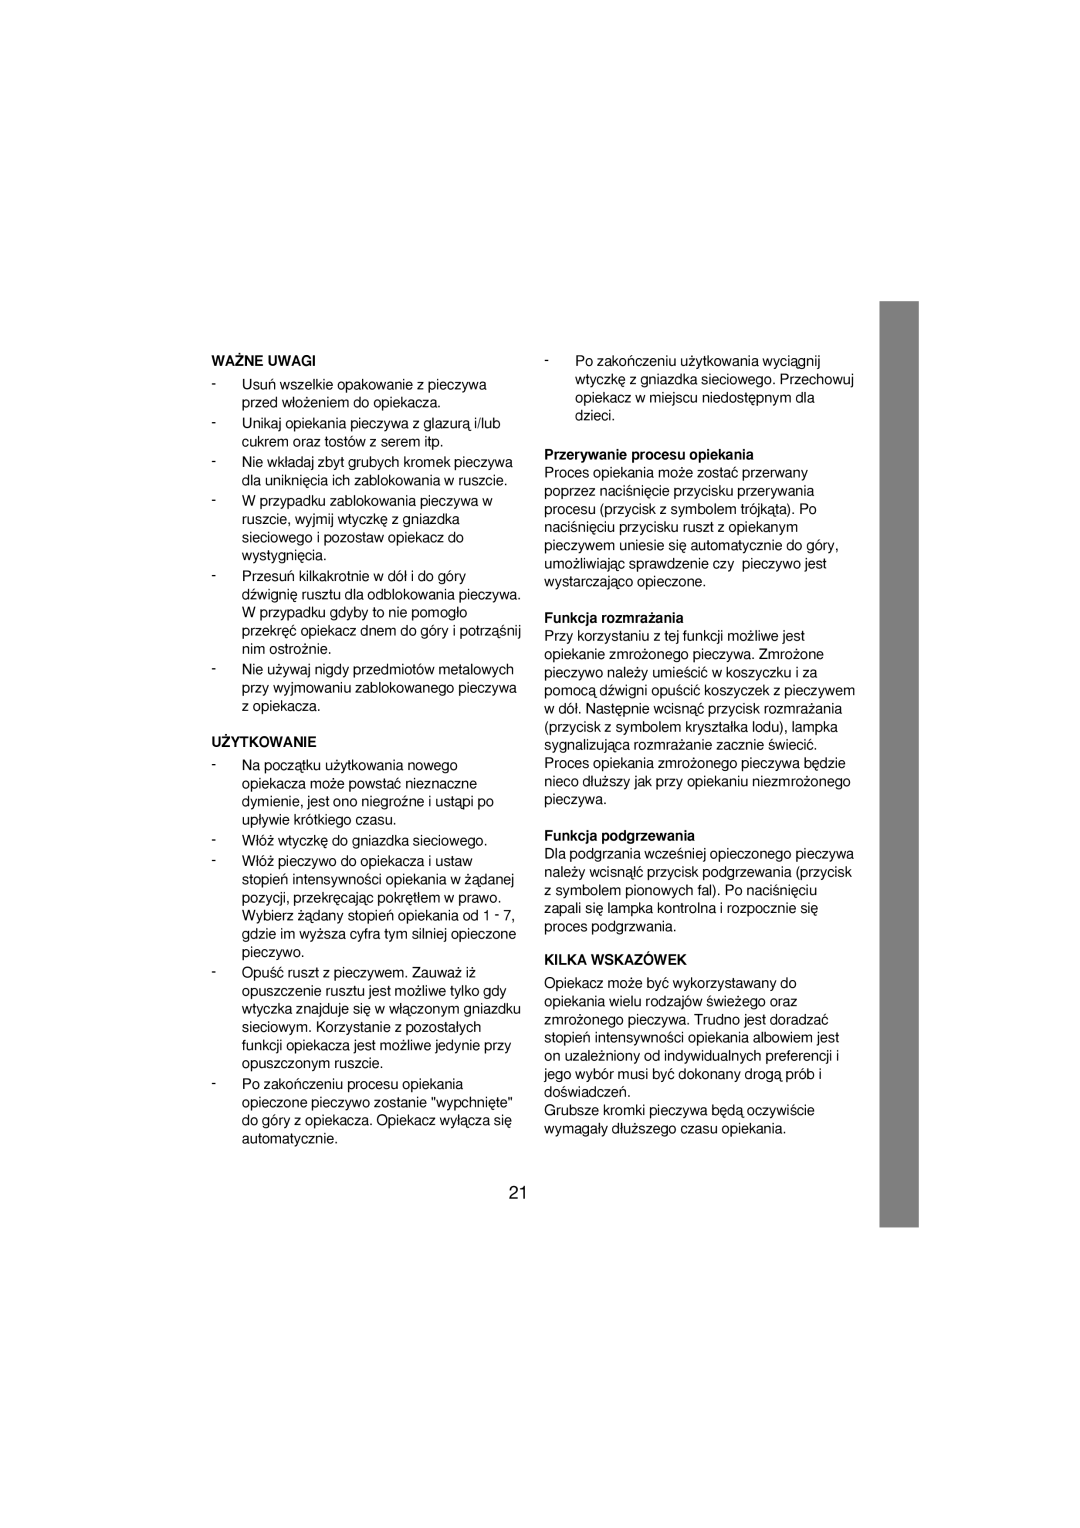 Melissa 243-012 manual Wa˚Ne Uwagi, U˚Ytkowanie, Przerywanie procesu opiekania, Funkcja rozmra˝ania, Funkcja podgrzewania 